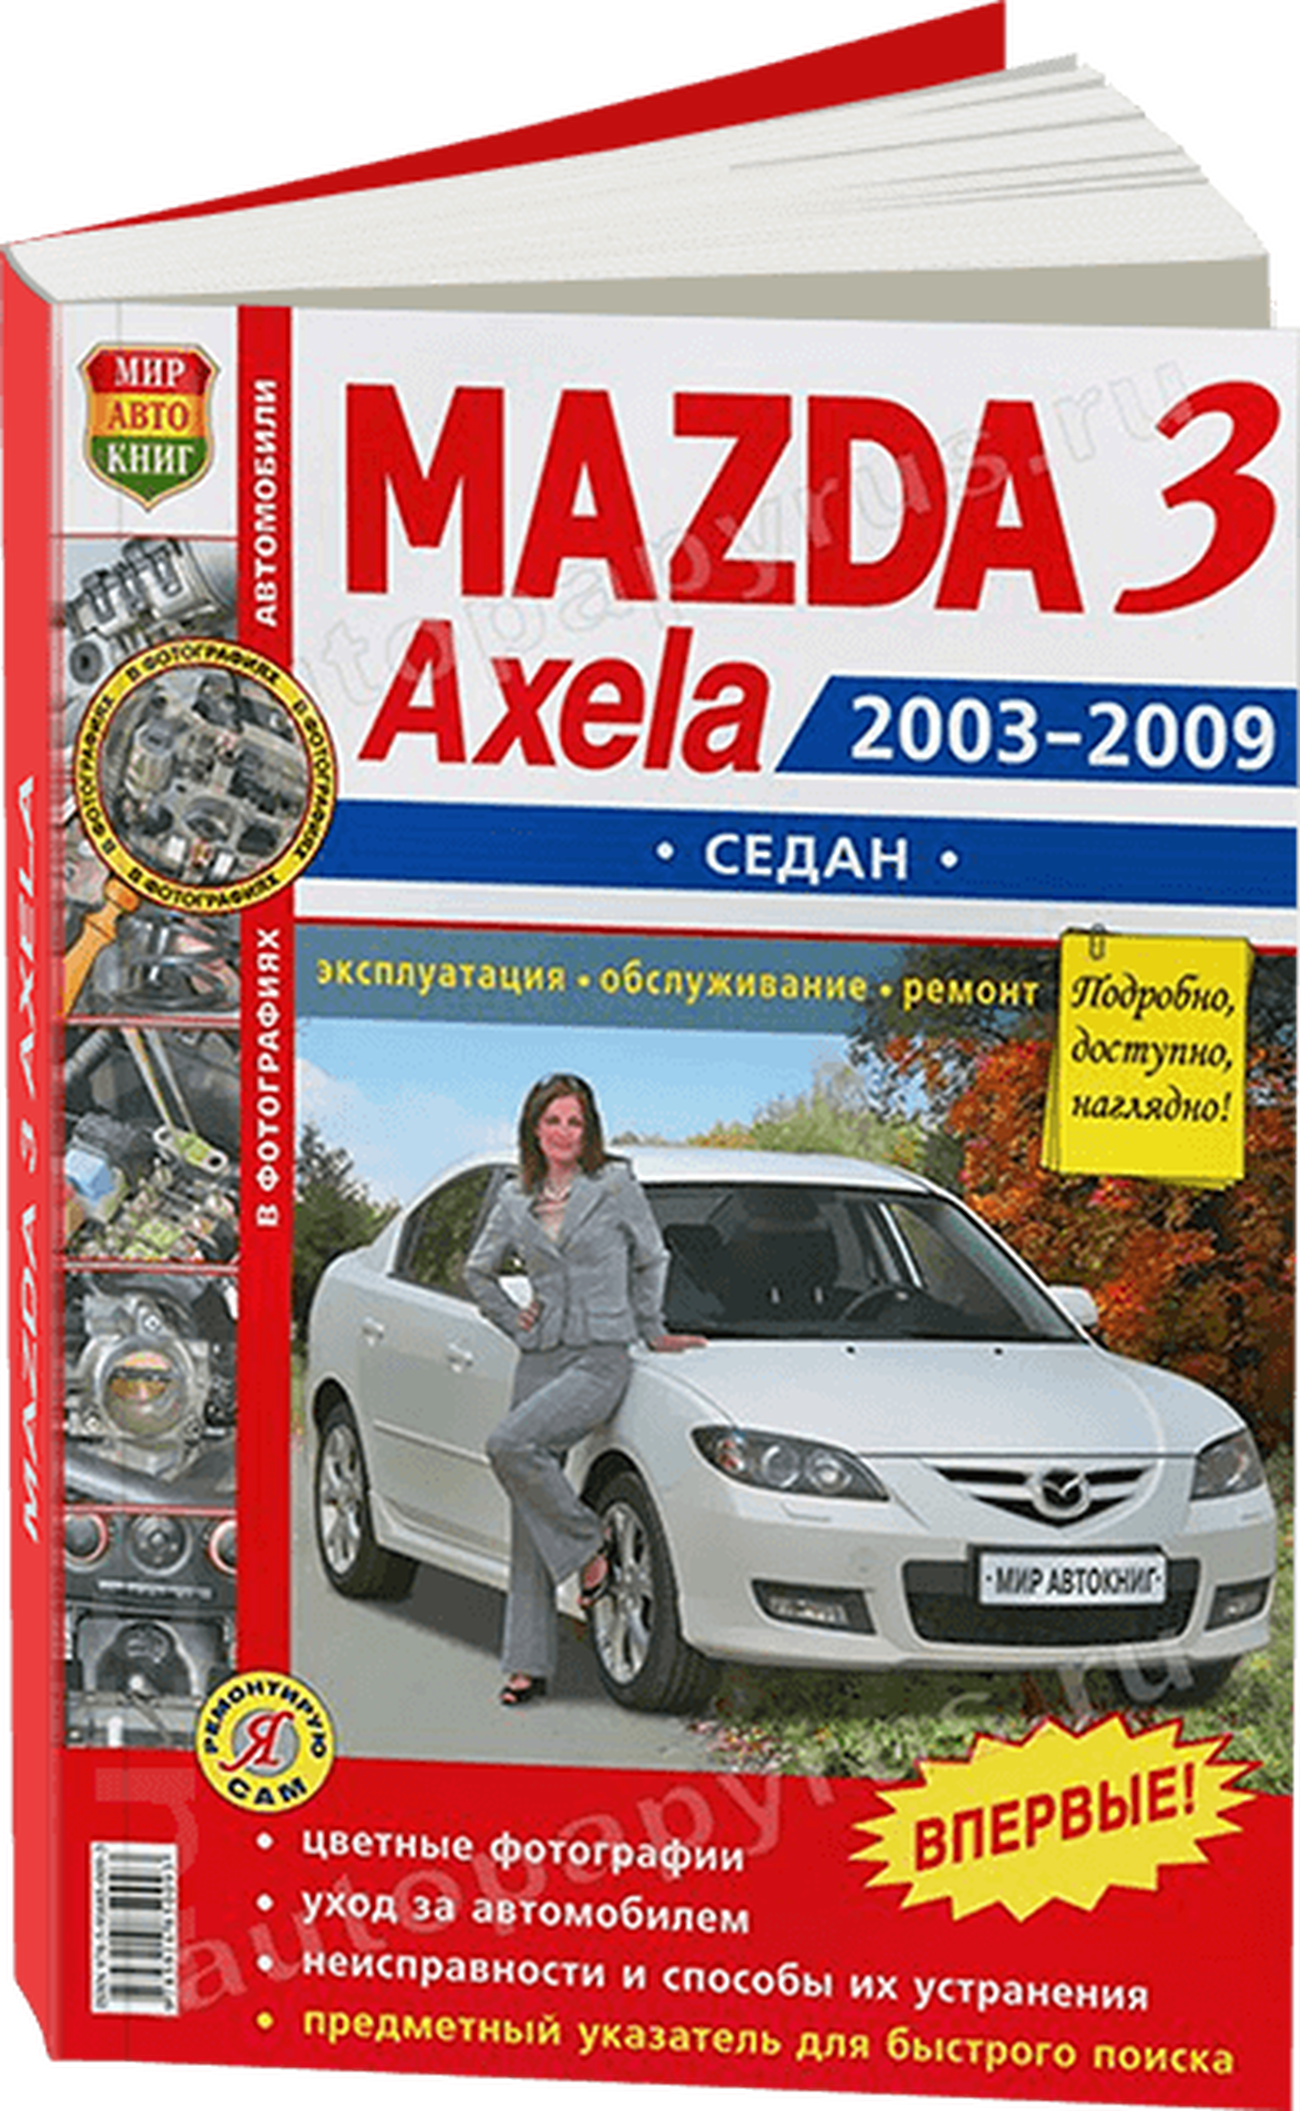 Книга: MAZDA 3 / AXELA (б) сед. 2003-2009 г.в., рем., экспл., то, ЦВЕТ. фото., сер. ЯРС | Мир Автокниг